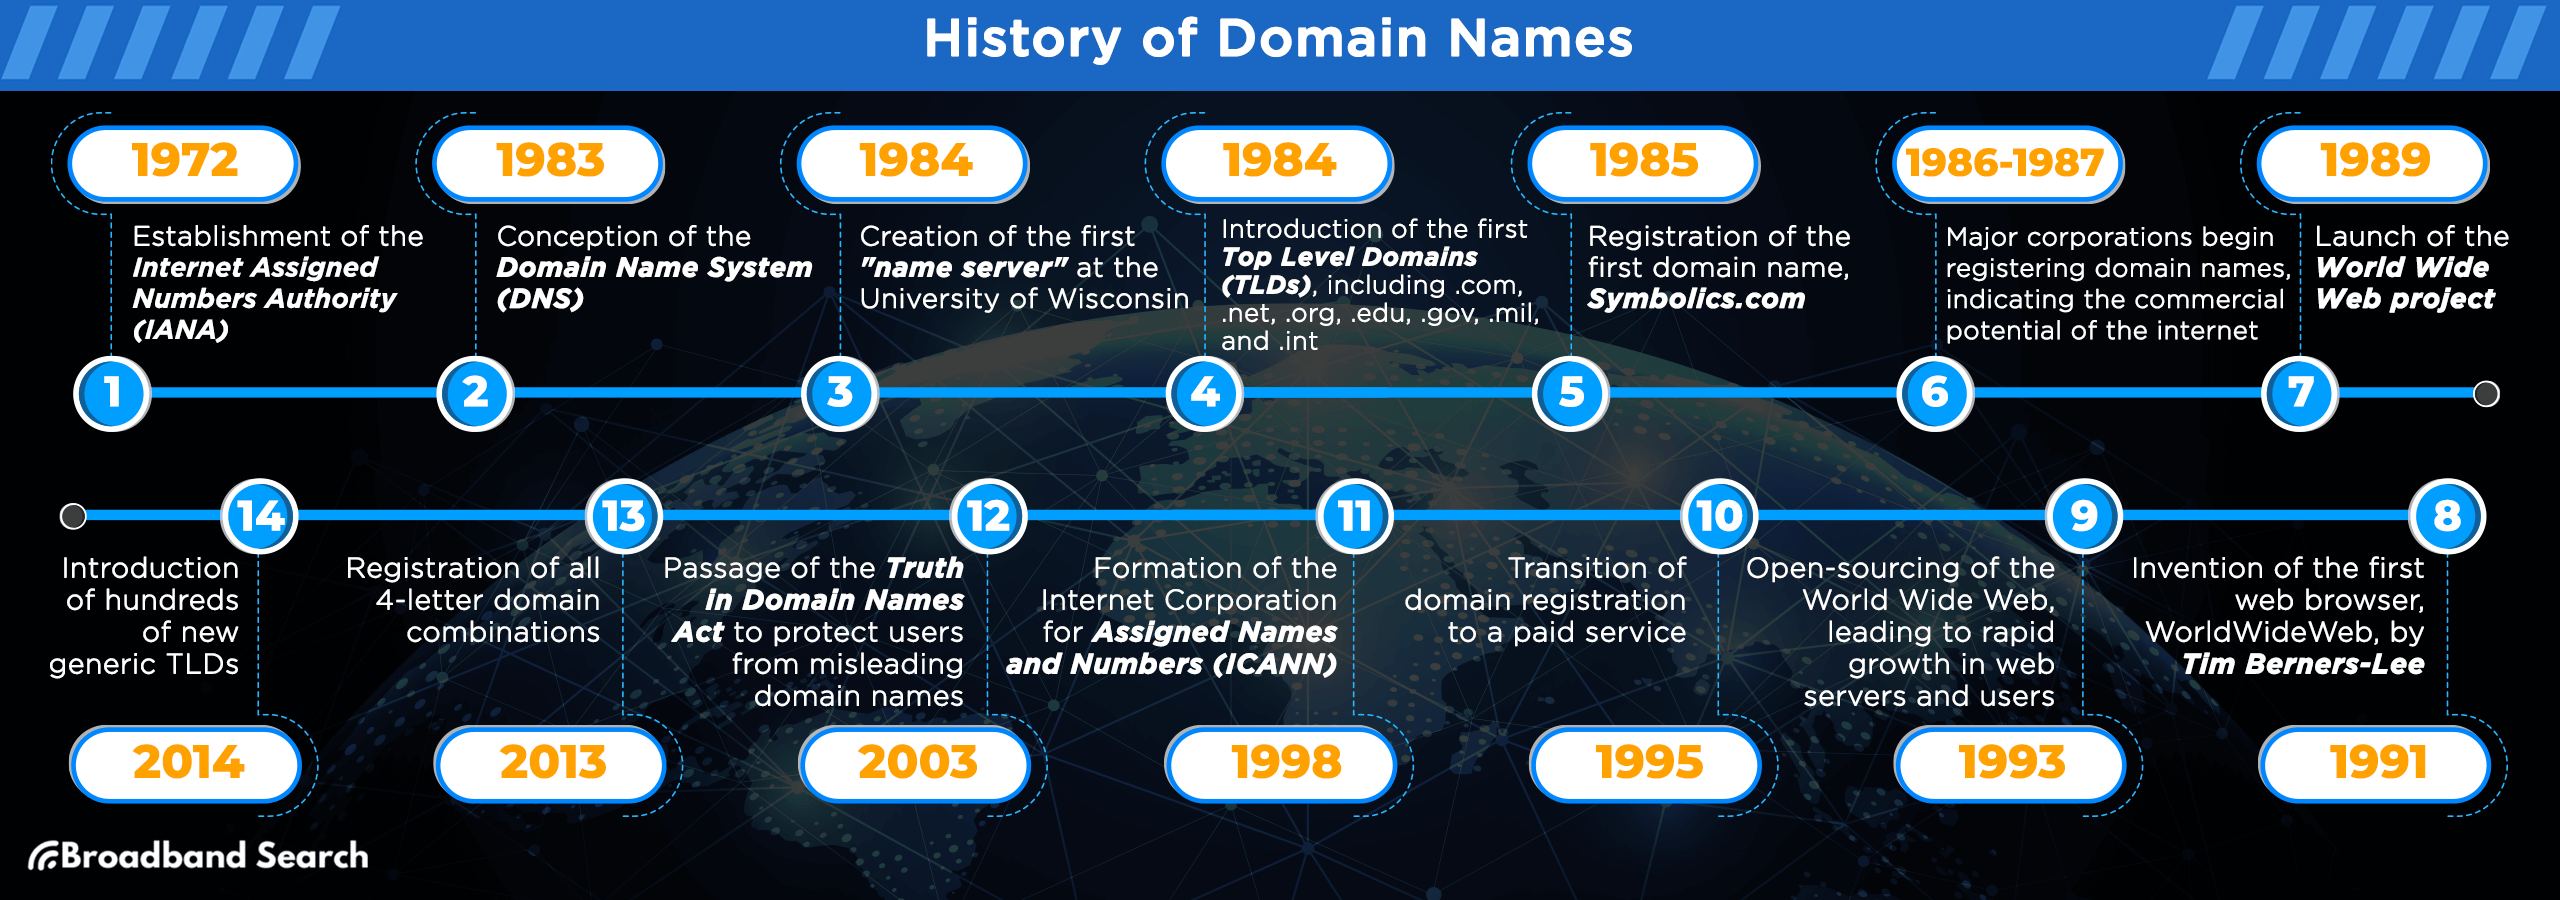 History of Domain Names